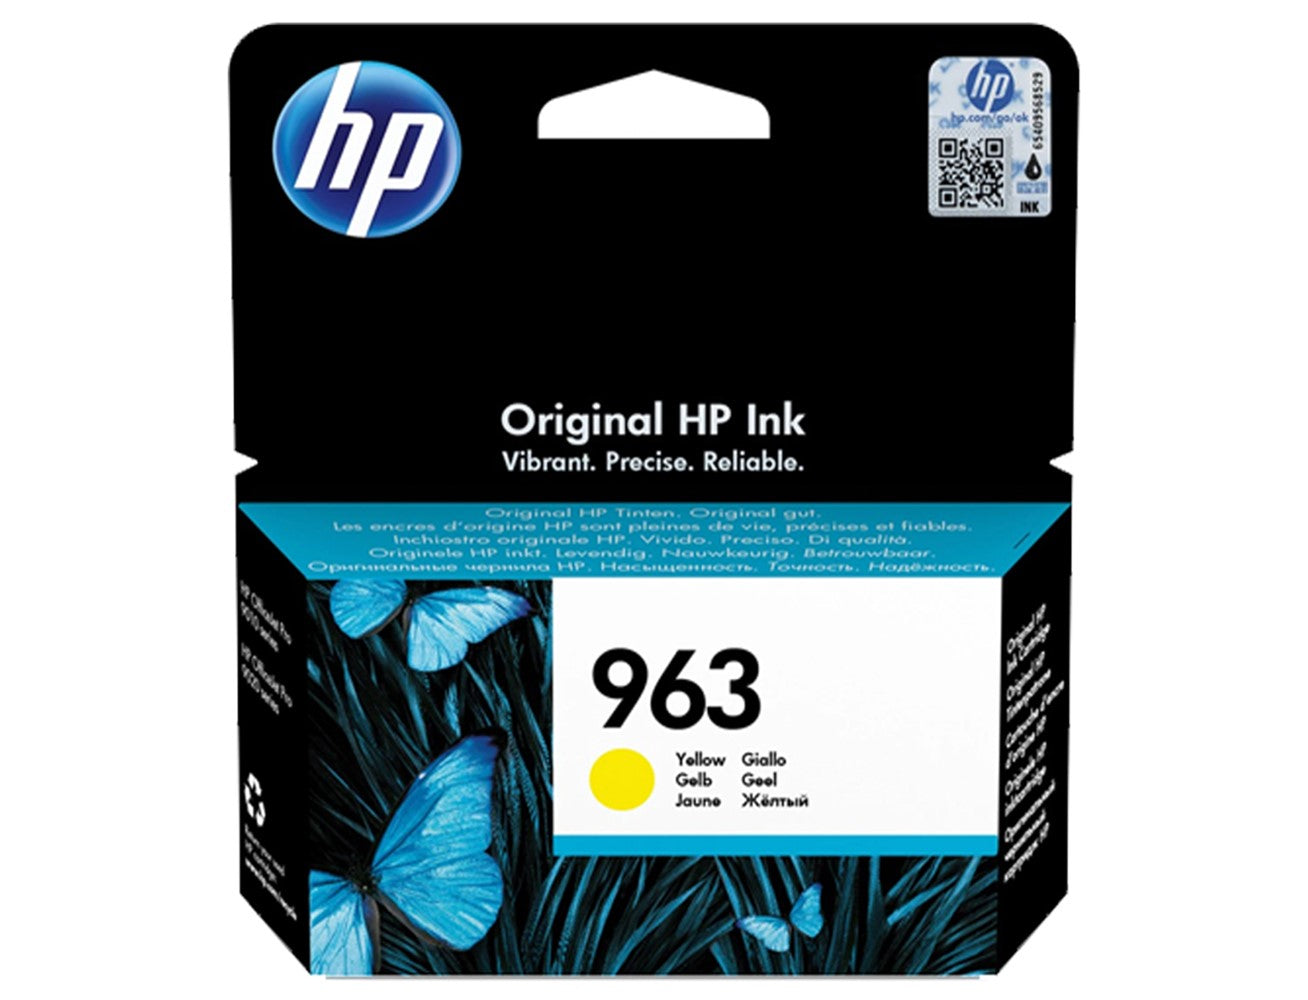 HP 963 Original Ink Cartridge - Yellow